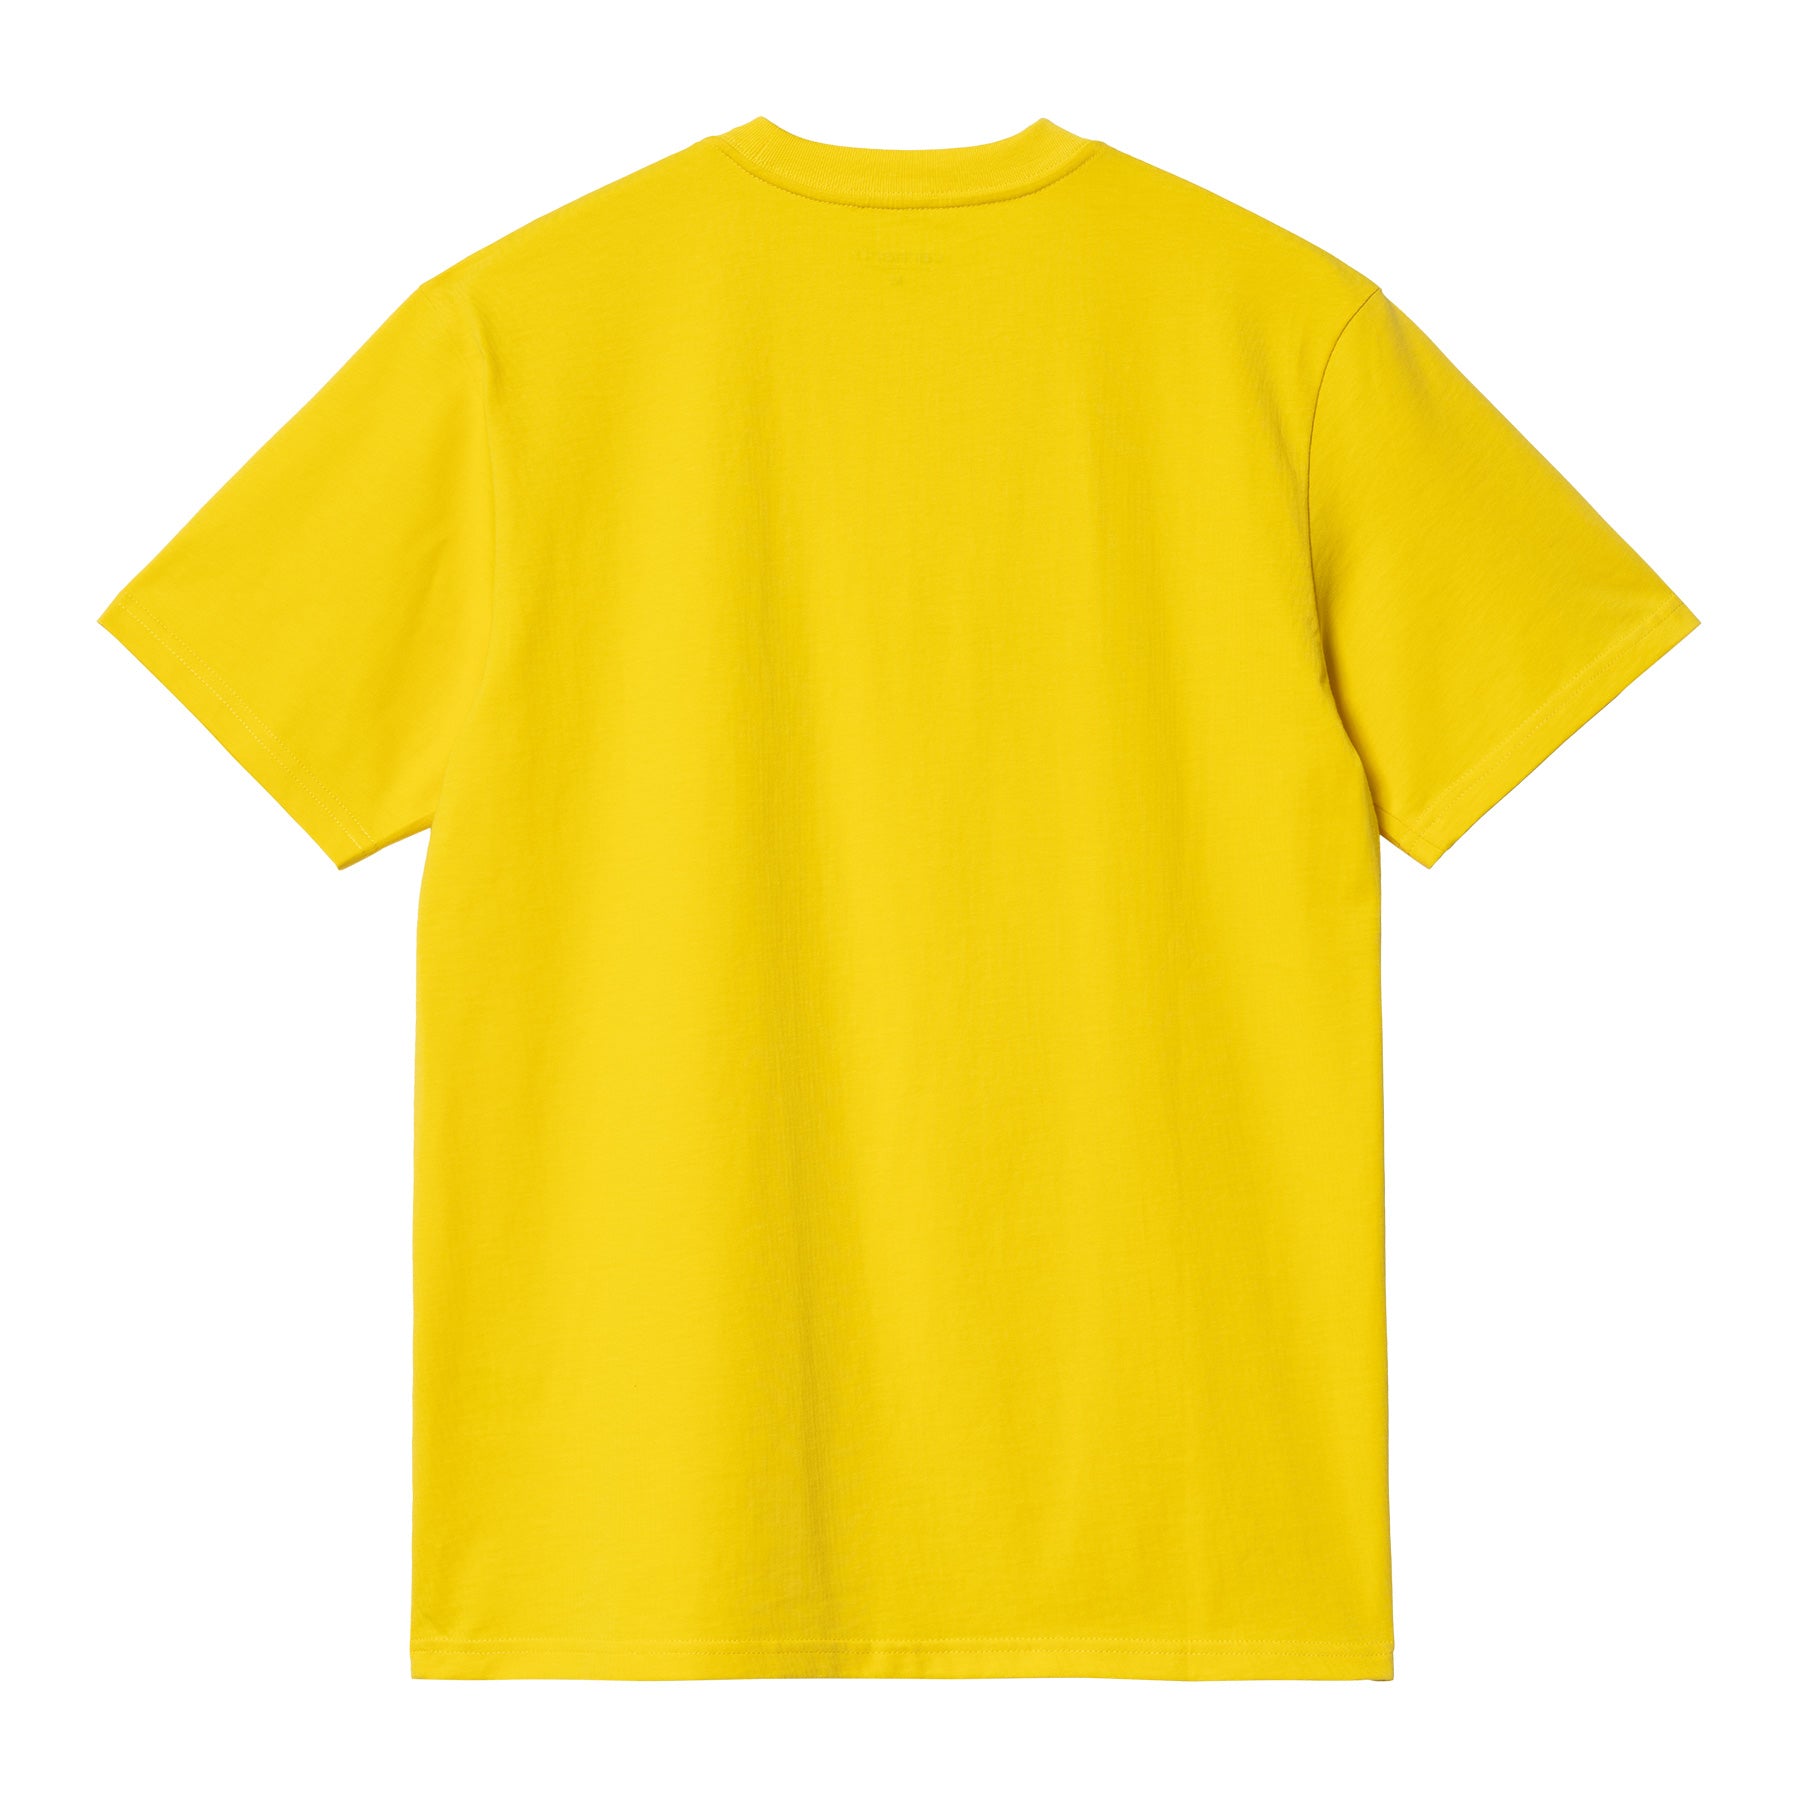 Carhartt WIP Script T-shirt - Buttercup/Black